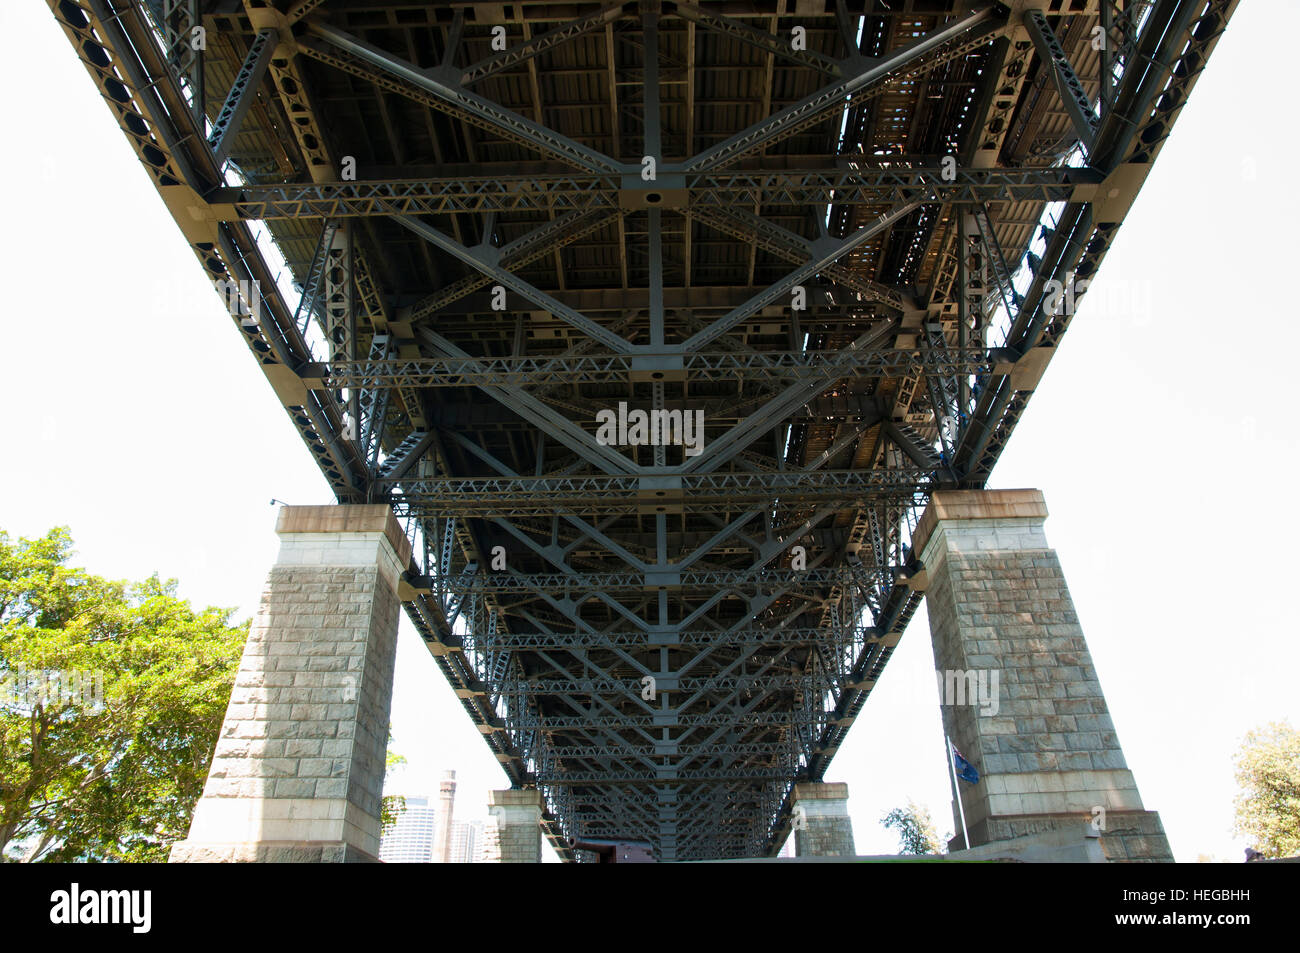 Le pont Harbour Bridge de Sydney - Australie Banque D'Images